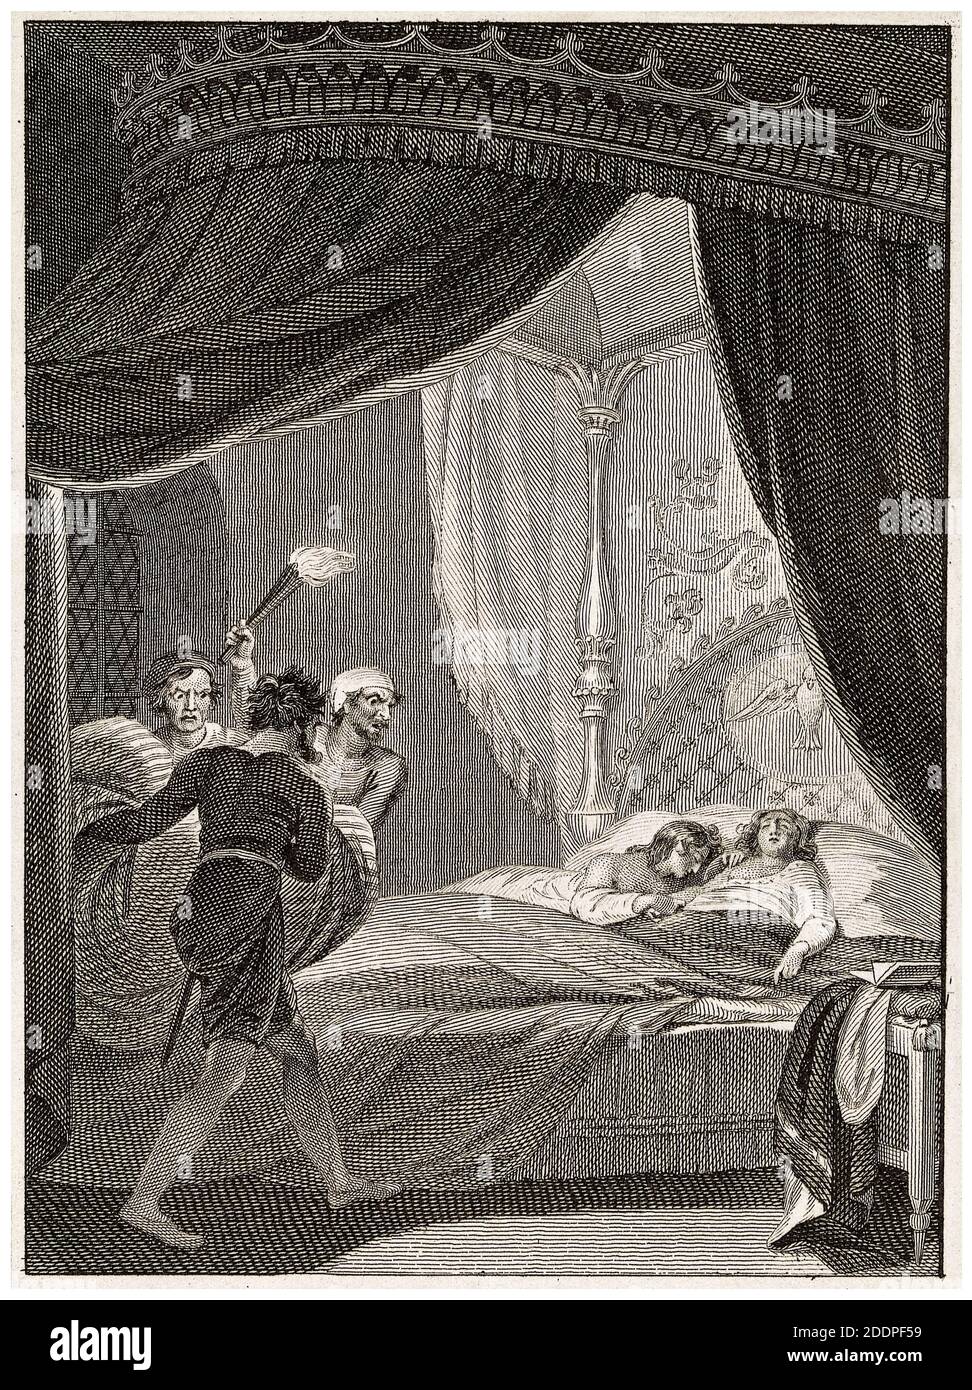 Edoardo V e il Duca di York: I principi affumicati nella Torre, incisione di Anker Smith dopo Robert Smirke, 1810 Foto Stock